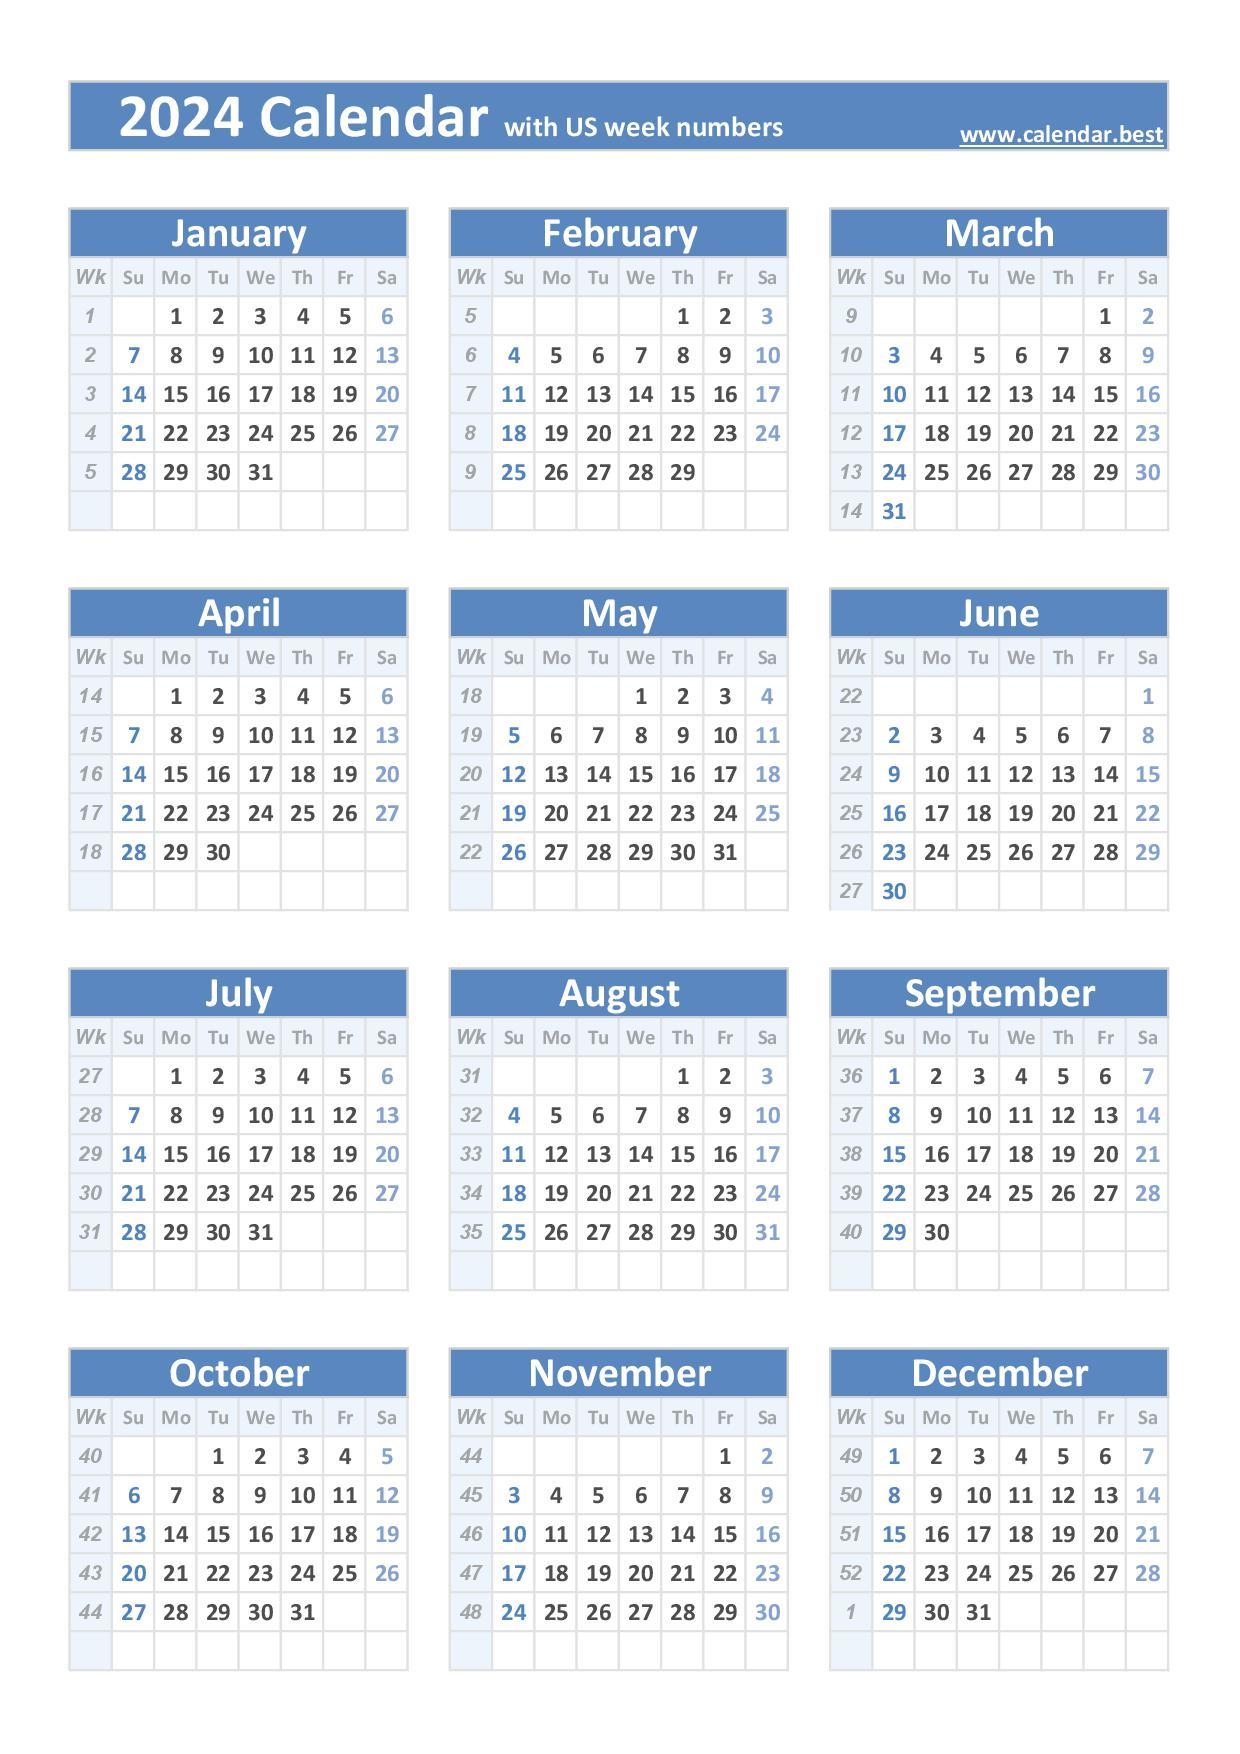 2024 Calendar With Week Numbers (Us And Iso Week Numbers) with regard to Free Printable Calendar 2024 With Week Numbers